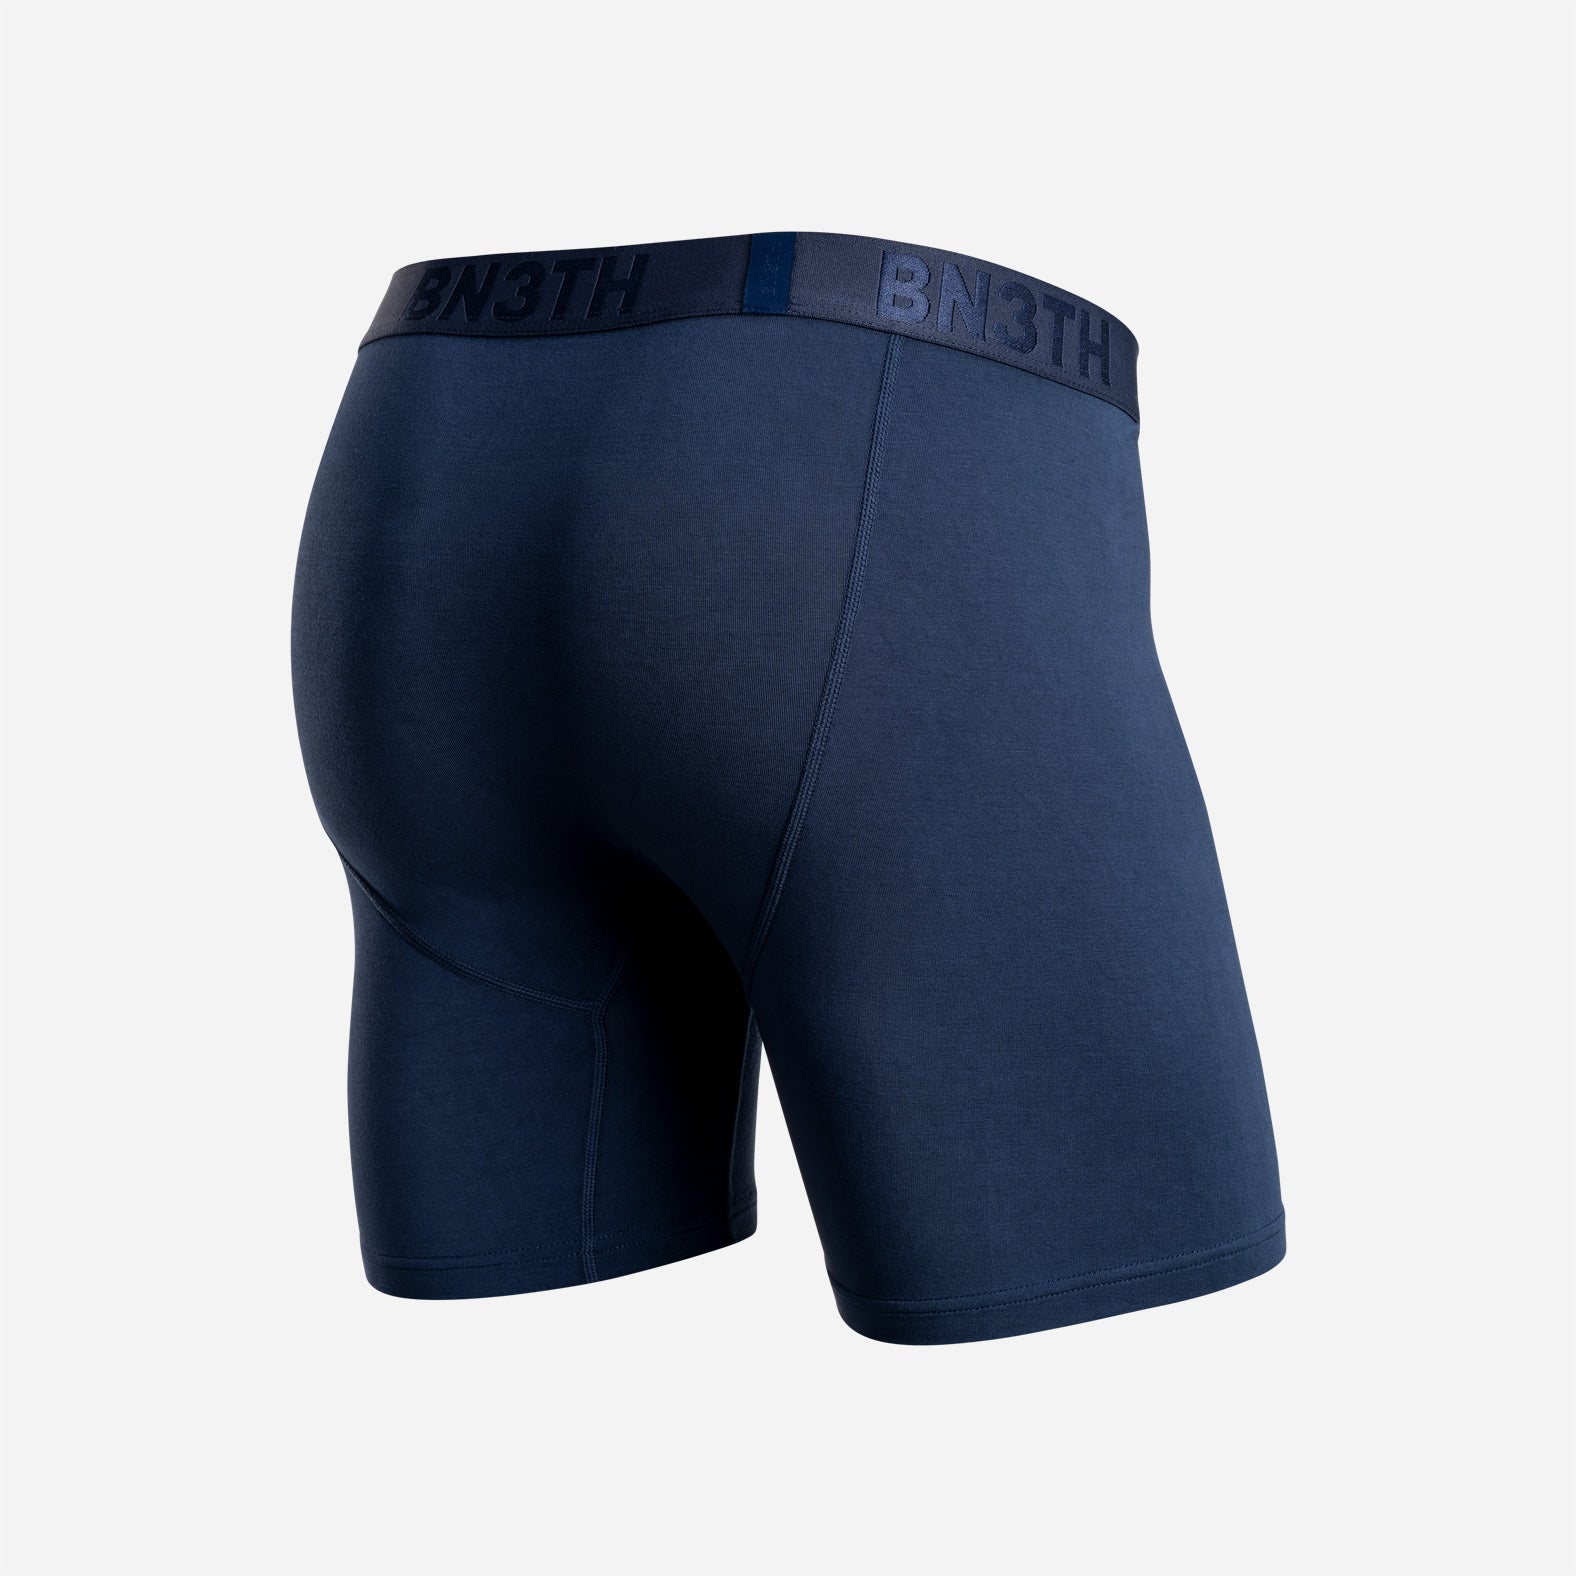 Underwear Brief: | Classic – BN3TH Navy Boxer